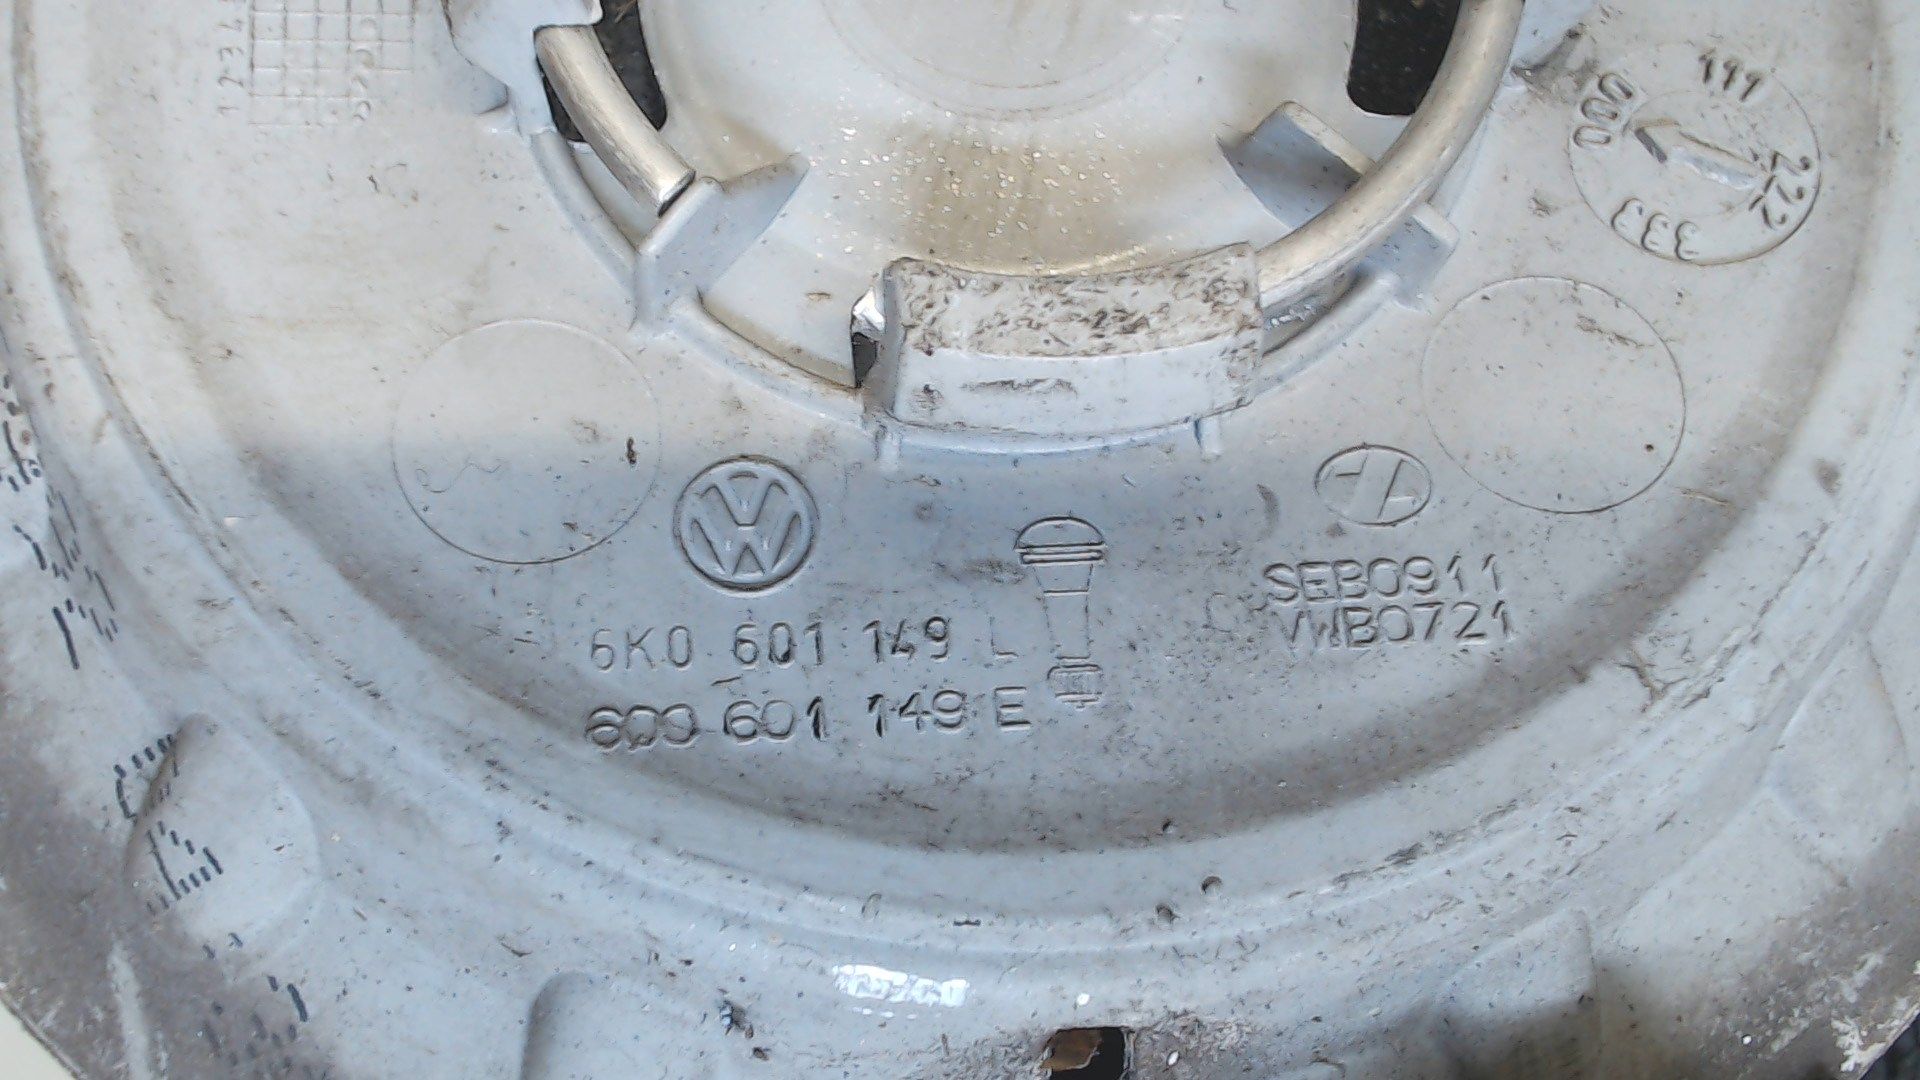 Б/У ориг. 6K0601149 Колпачок литого диска Volkswagen Polo 2001-2005, by3c8061182 Б/У запчасти